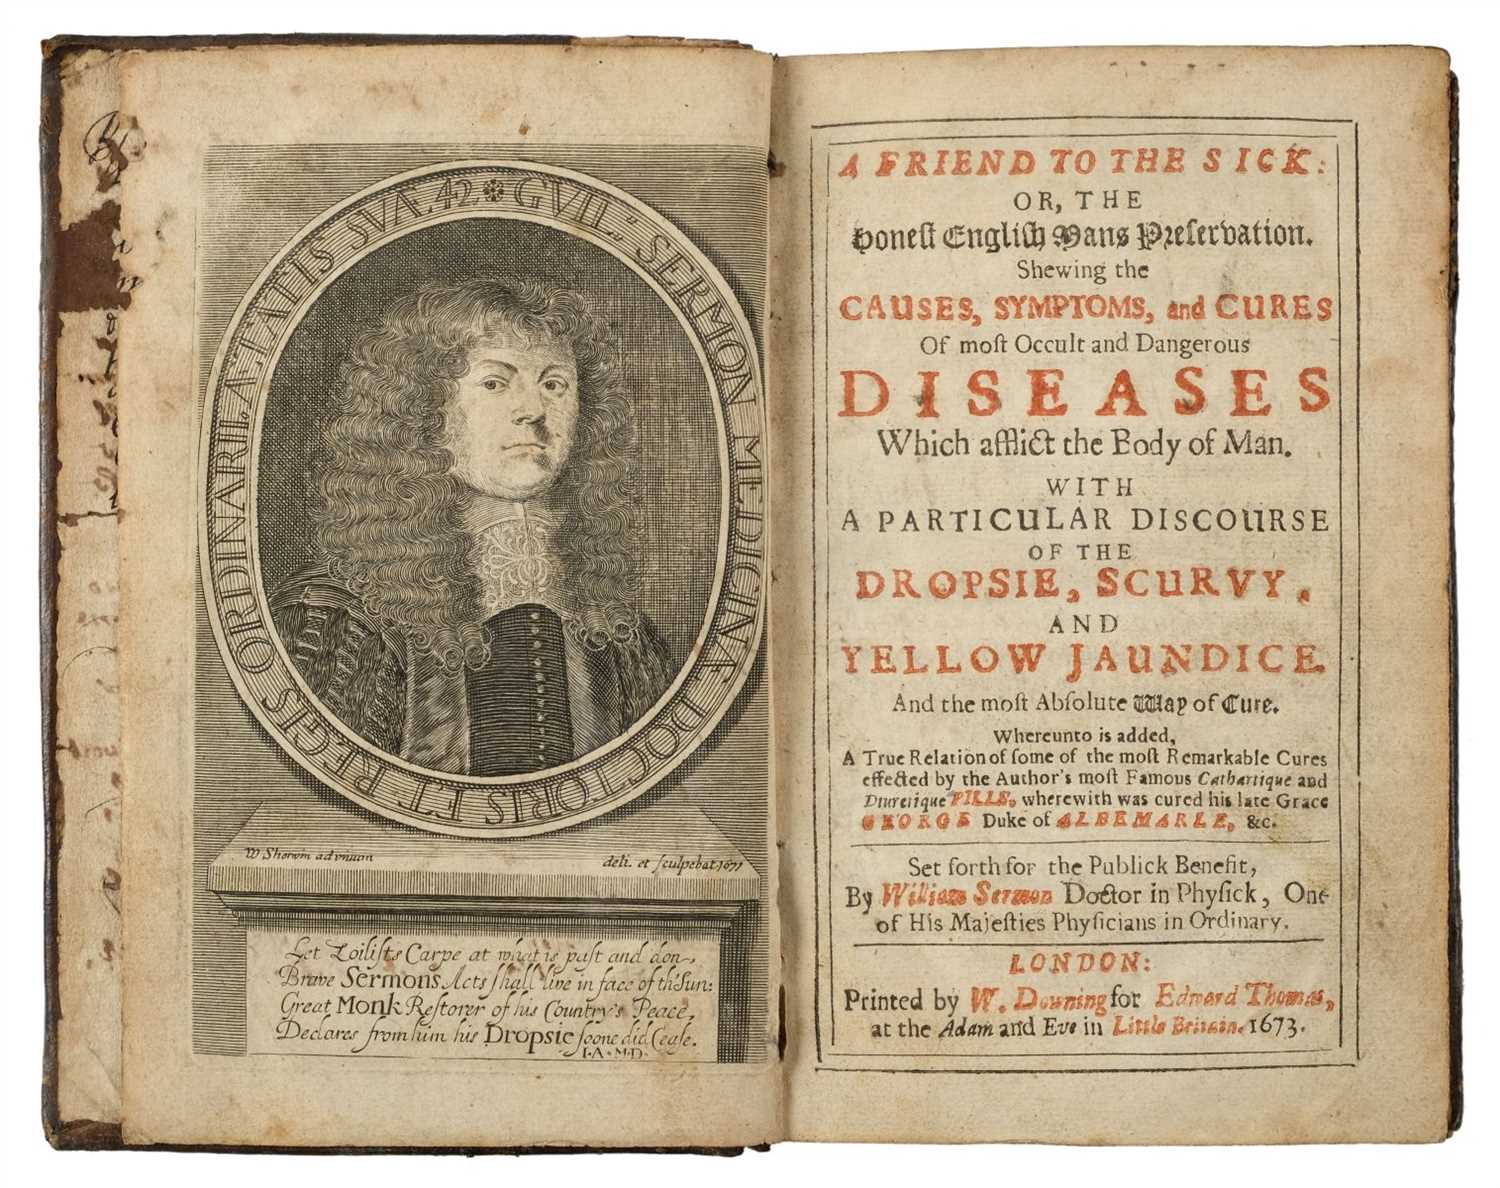 Lot 46 - Sermon (William). A Friend to the Sick, 1673